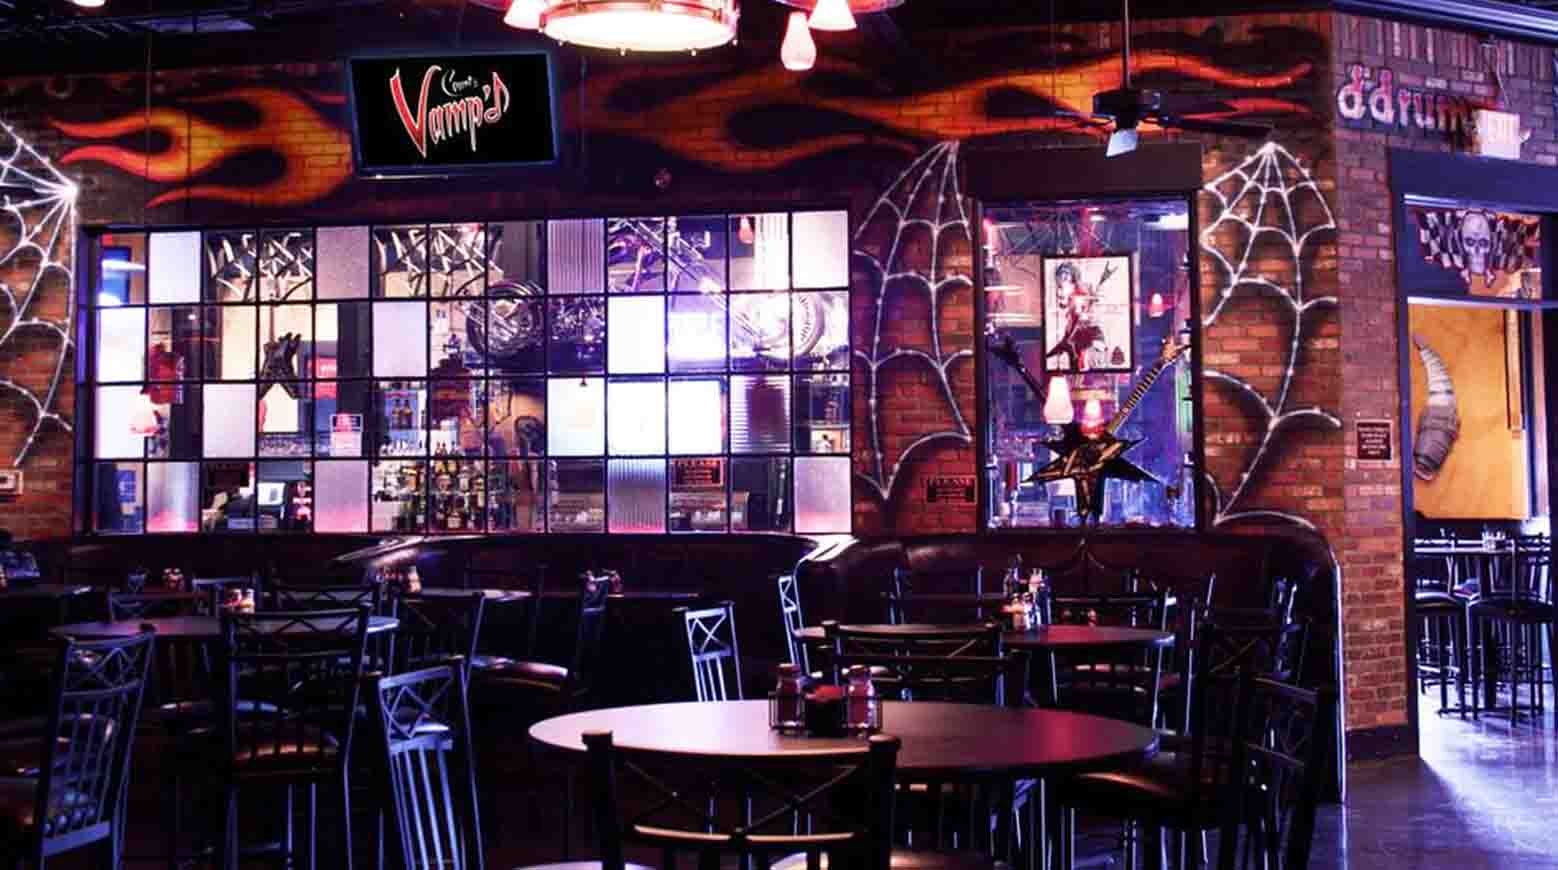 Danny's bar, Count’s Vamp’d Rock Bar & Grill